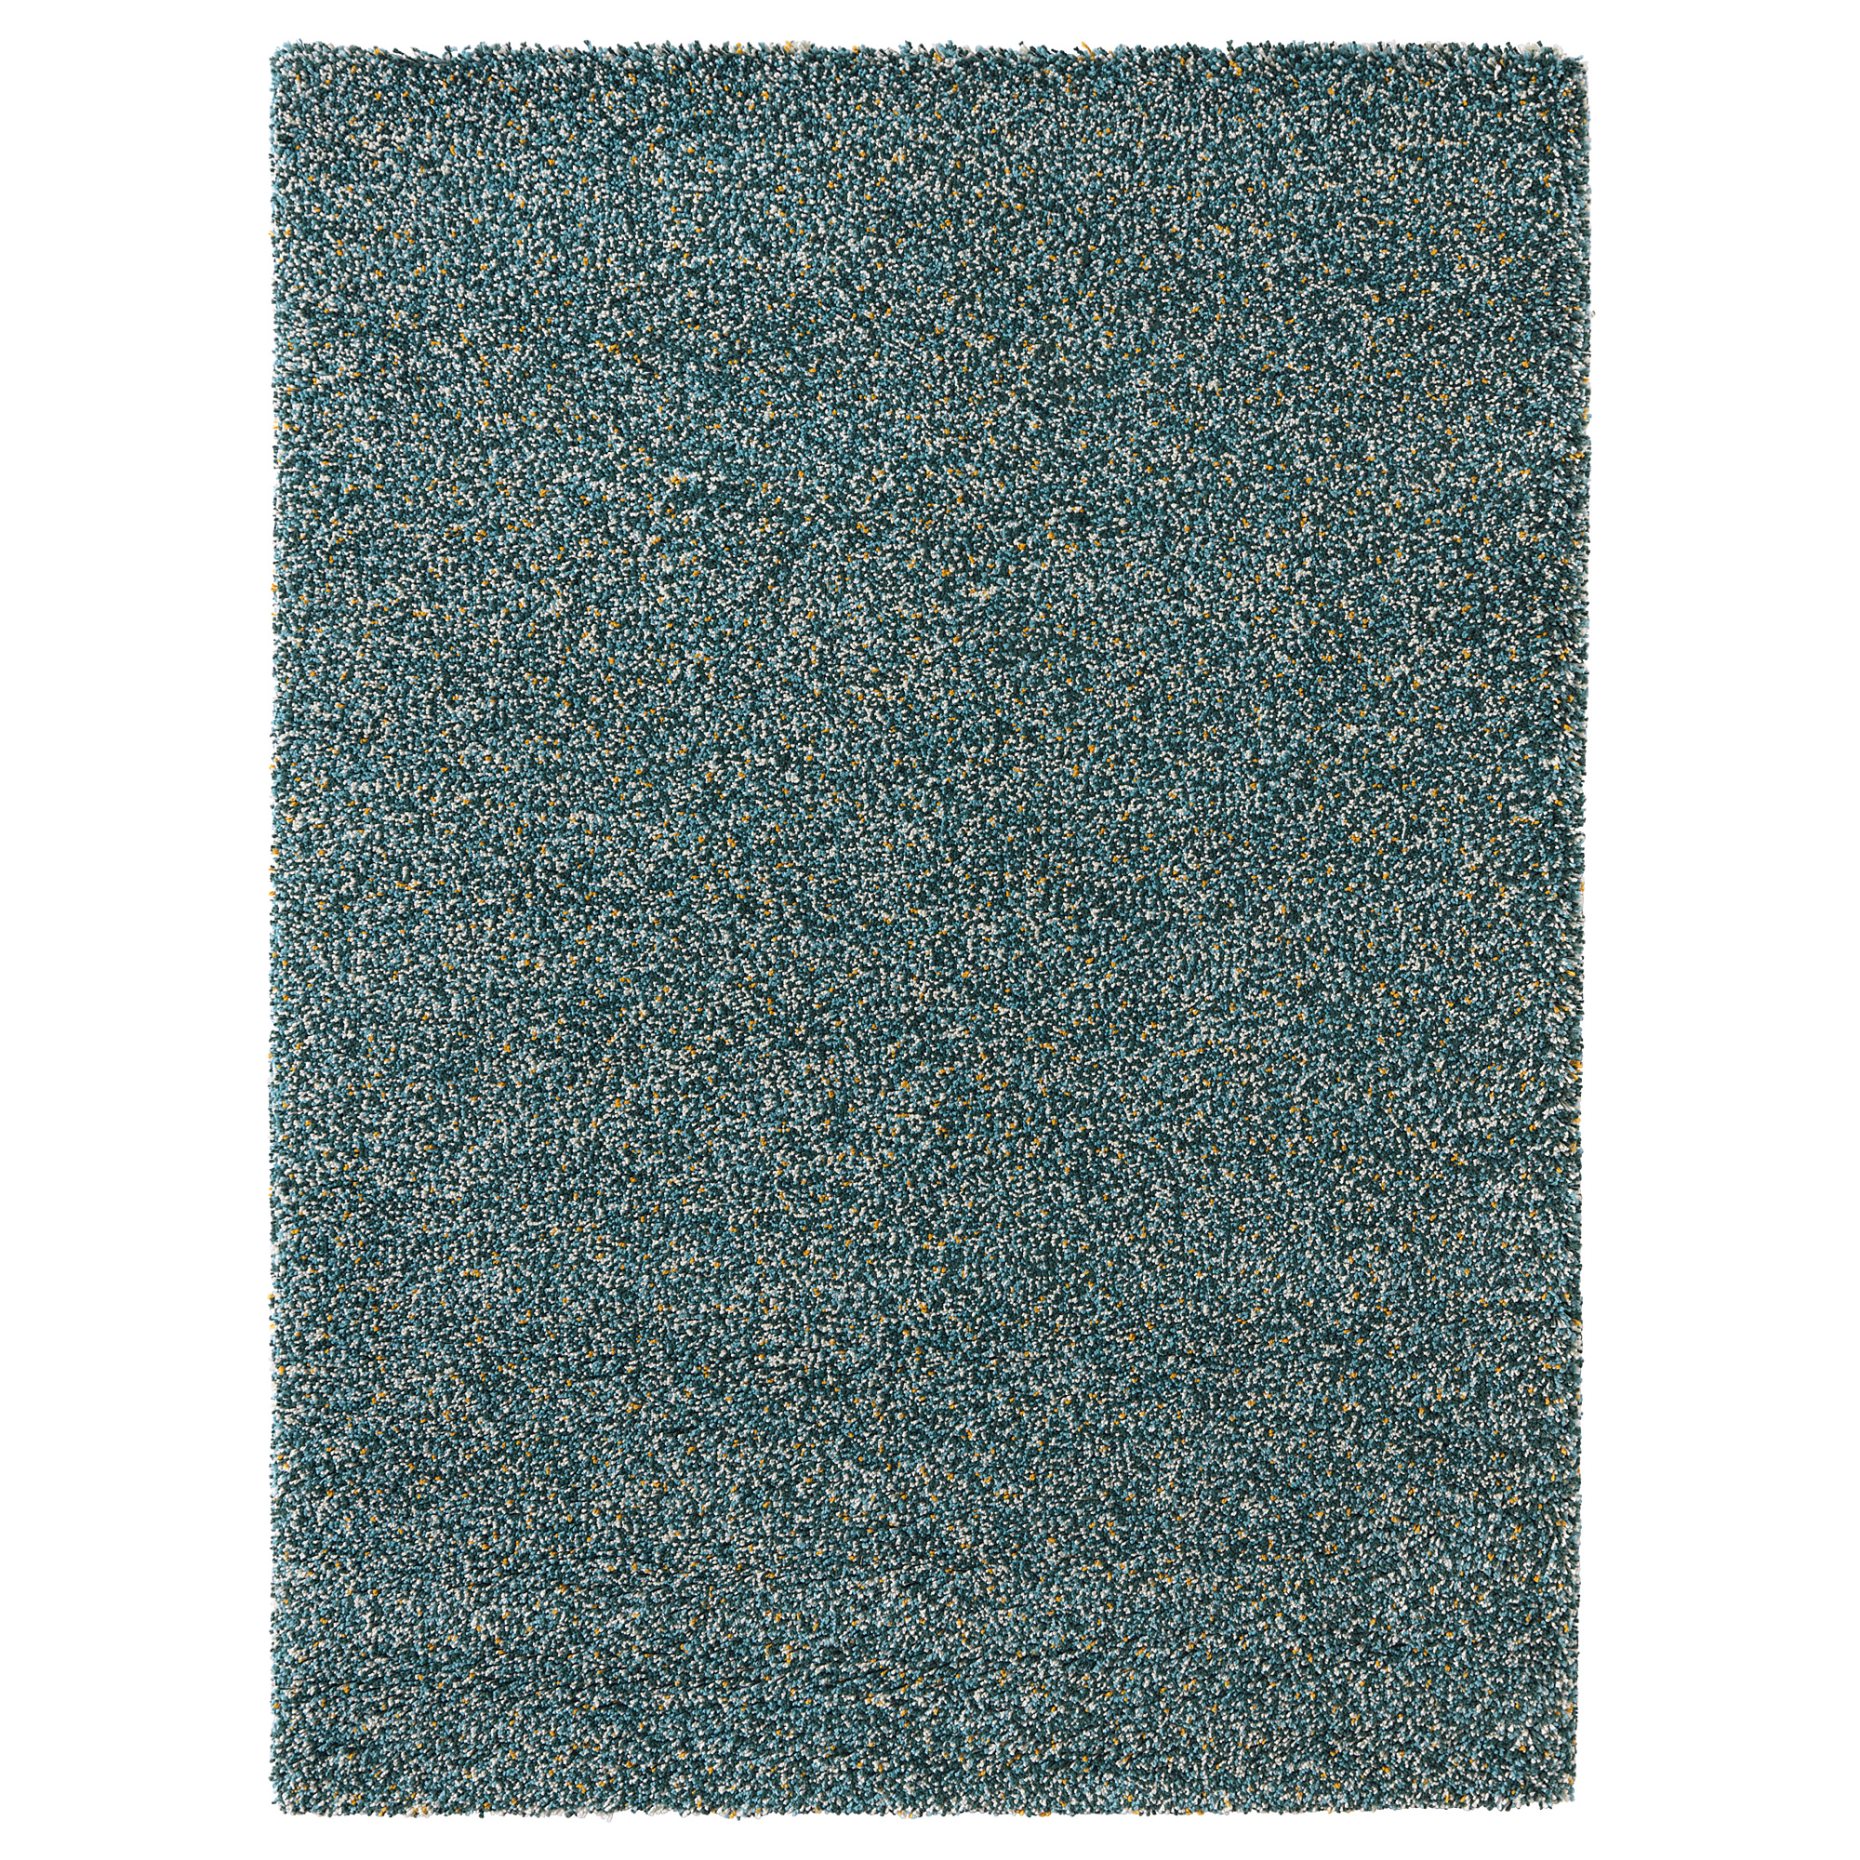 VINDUM, rug high pile, 170x230 cm, 203.449.83